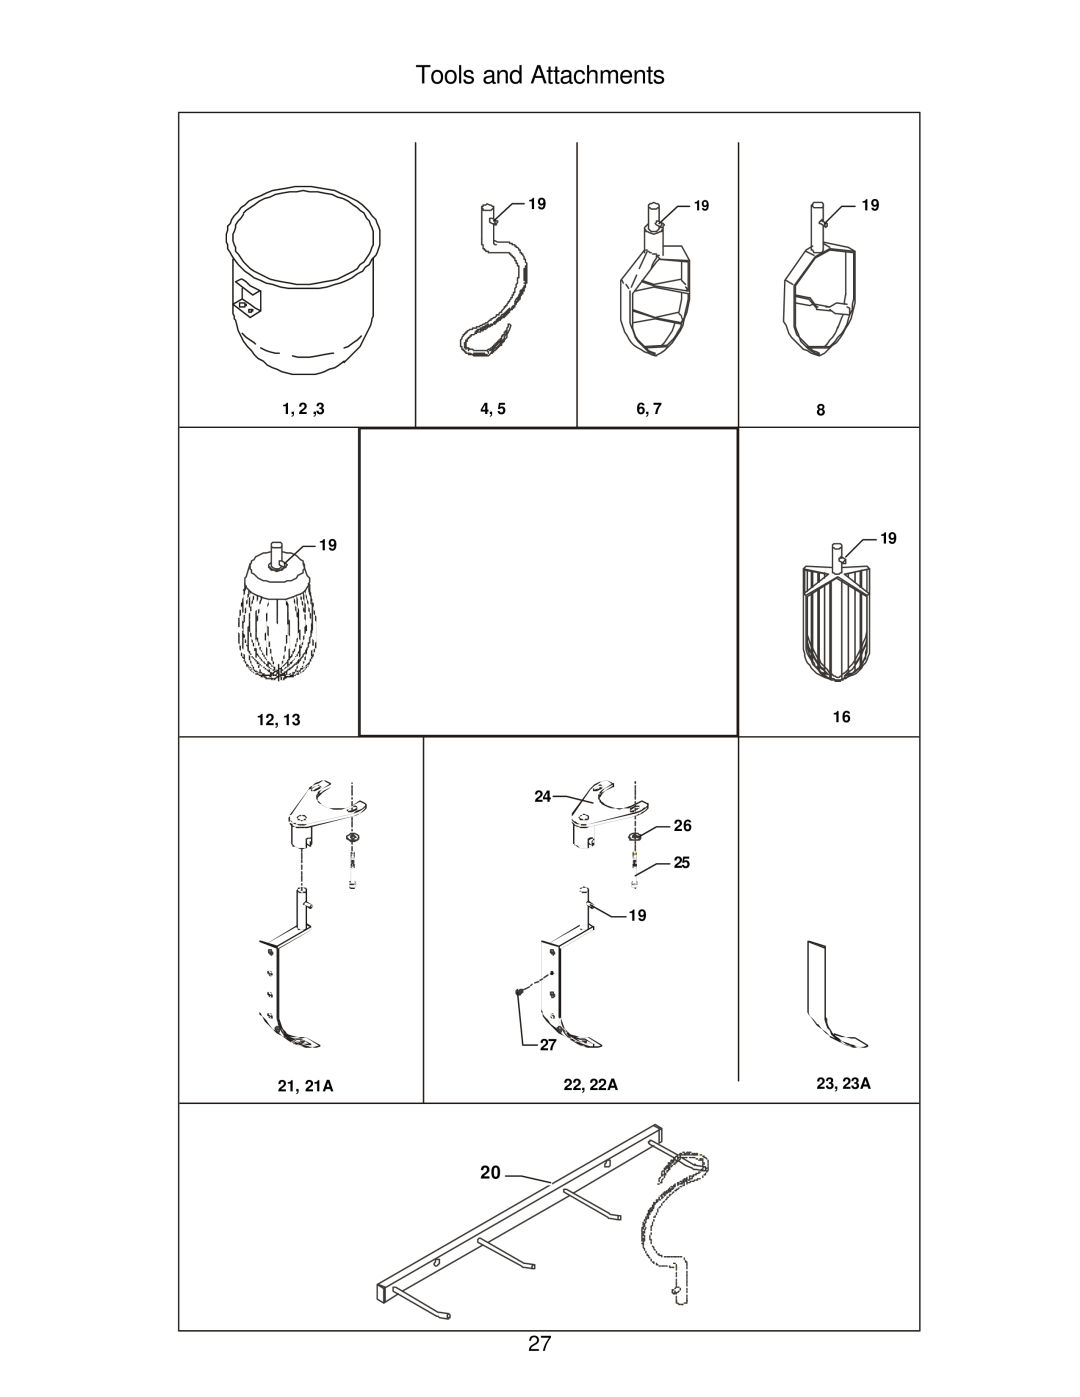 Varimixer W20 F, W20 A, W20 J operation manual Tools and Attachments, 1, 2 ,3, 21, 21A, 22, 22A, 23, 23A 